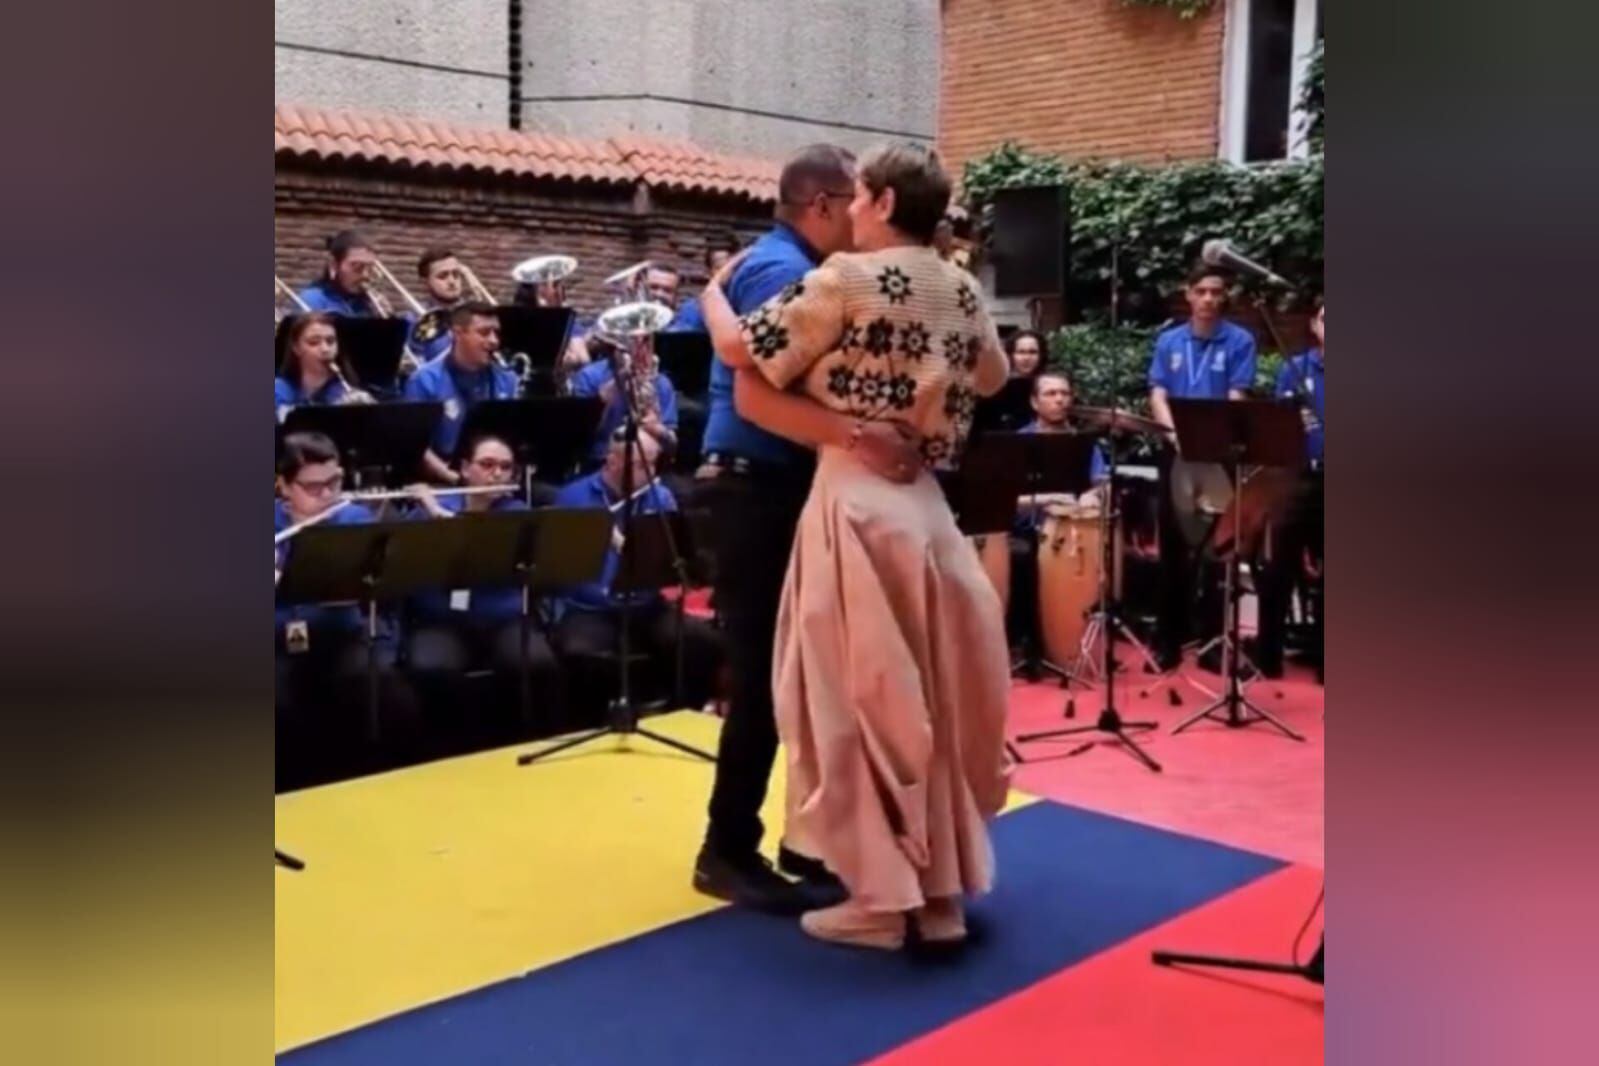 polémica: reviven video de verónica alcocer bailando sobre la bandera de colombia. aquí están las imágenes de la indignación